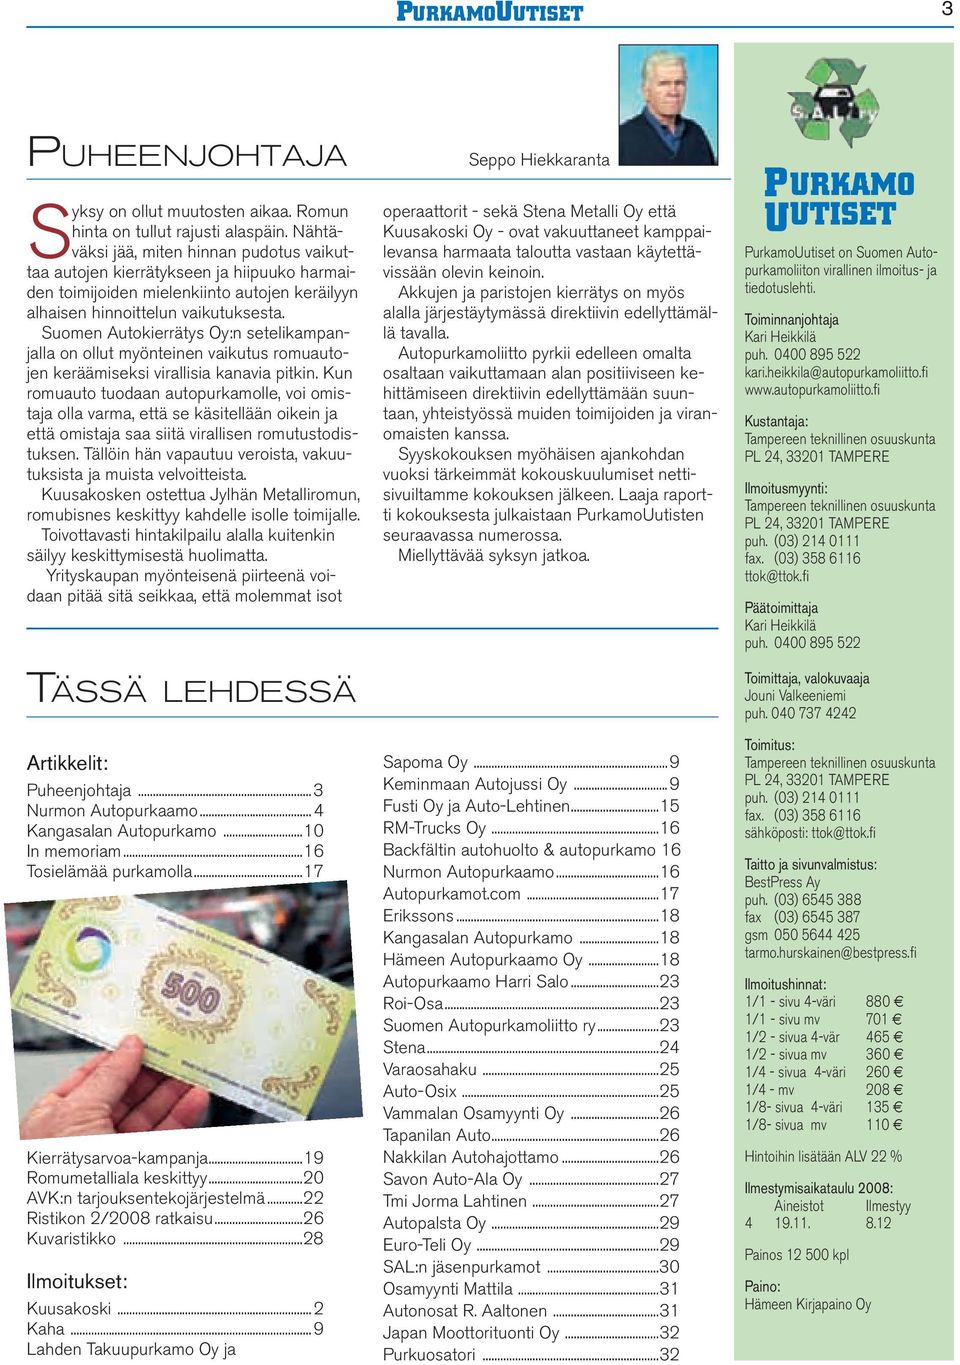 Suomen Autokierrätys Oy:n setelikampanjalla on ollut myönteinen vaikutus romuautojen keräämiseksi virallisia kanavia pitkin.